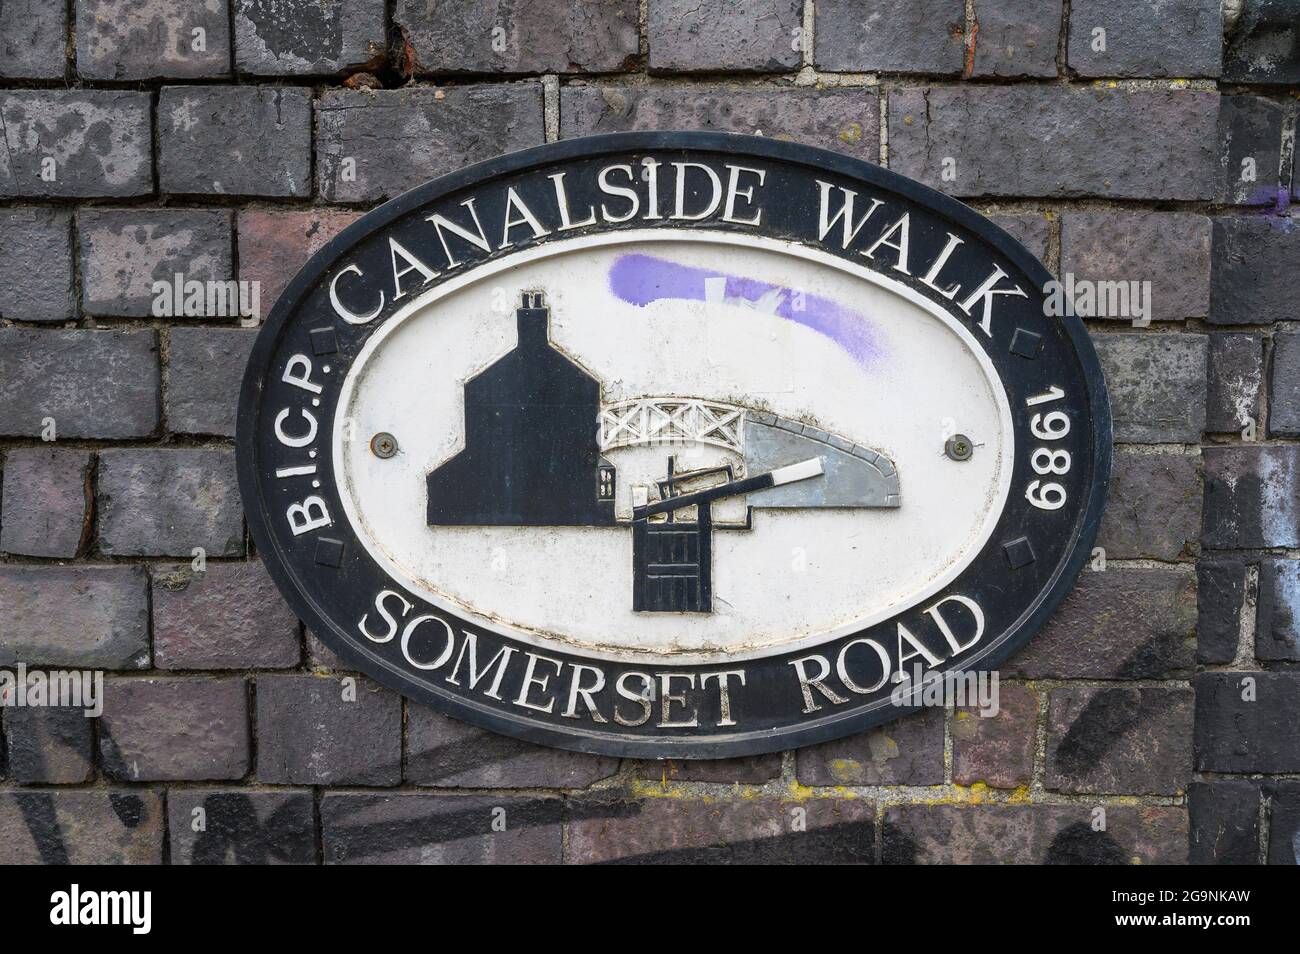 Ovale gusseiserne Plakette auf einer Backsteinmauer über dem Worcester und Birmingham Canal an der Somerset Road, die einen Spaziergang am Kanal in Birmingham, England, markiert. Stockfoto